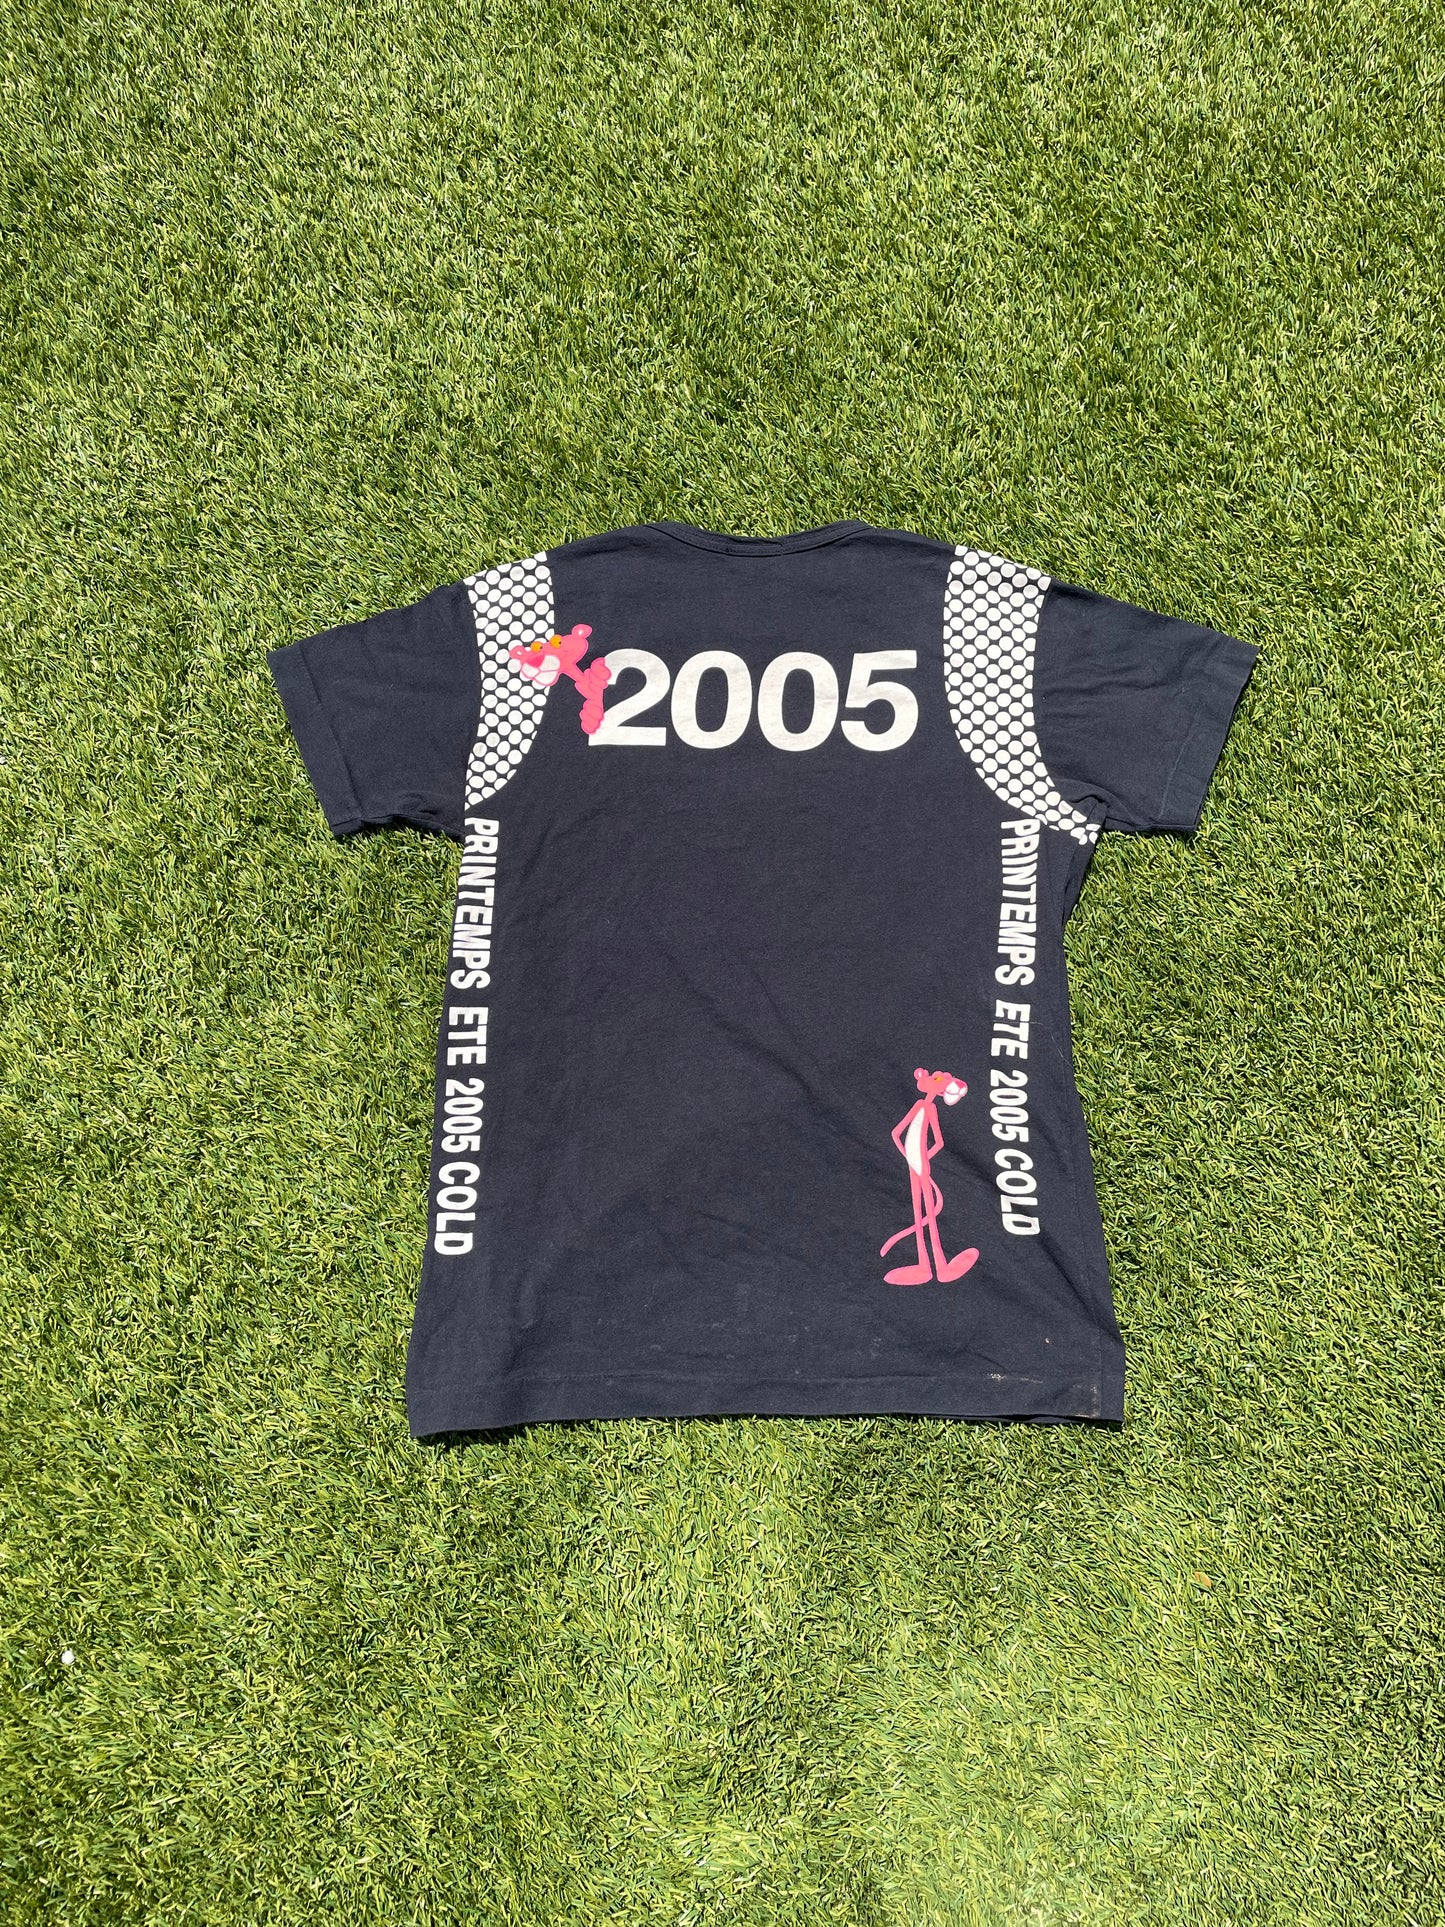 AD2009 Comme Des Garçons Homme Plus Pink Panther "ete" T-Shirt